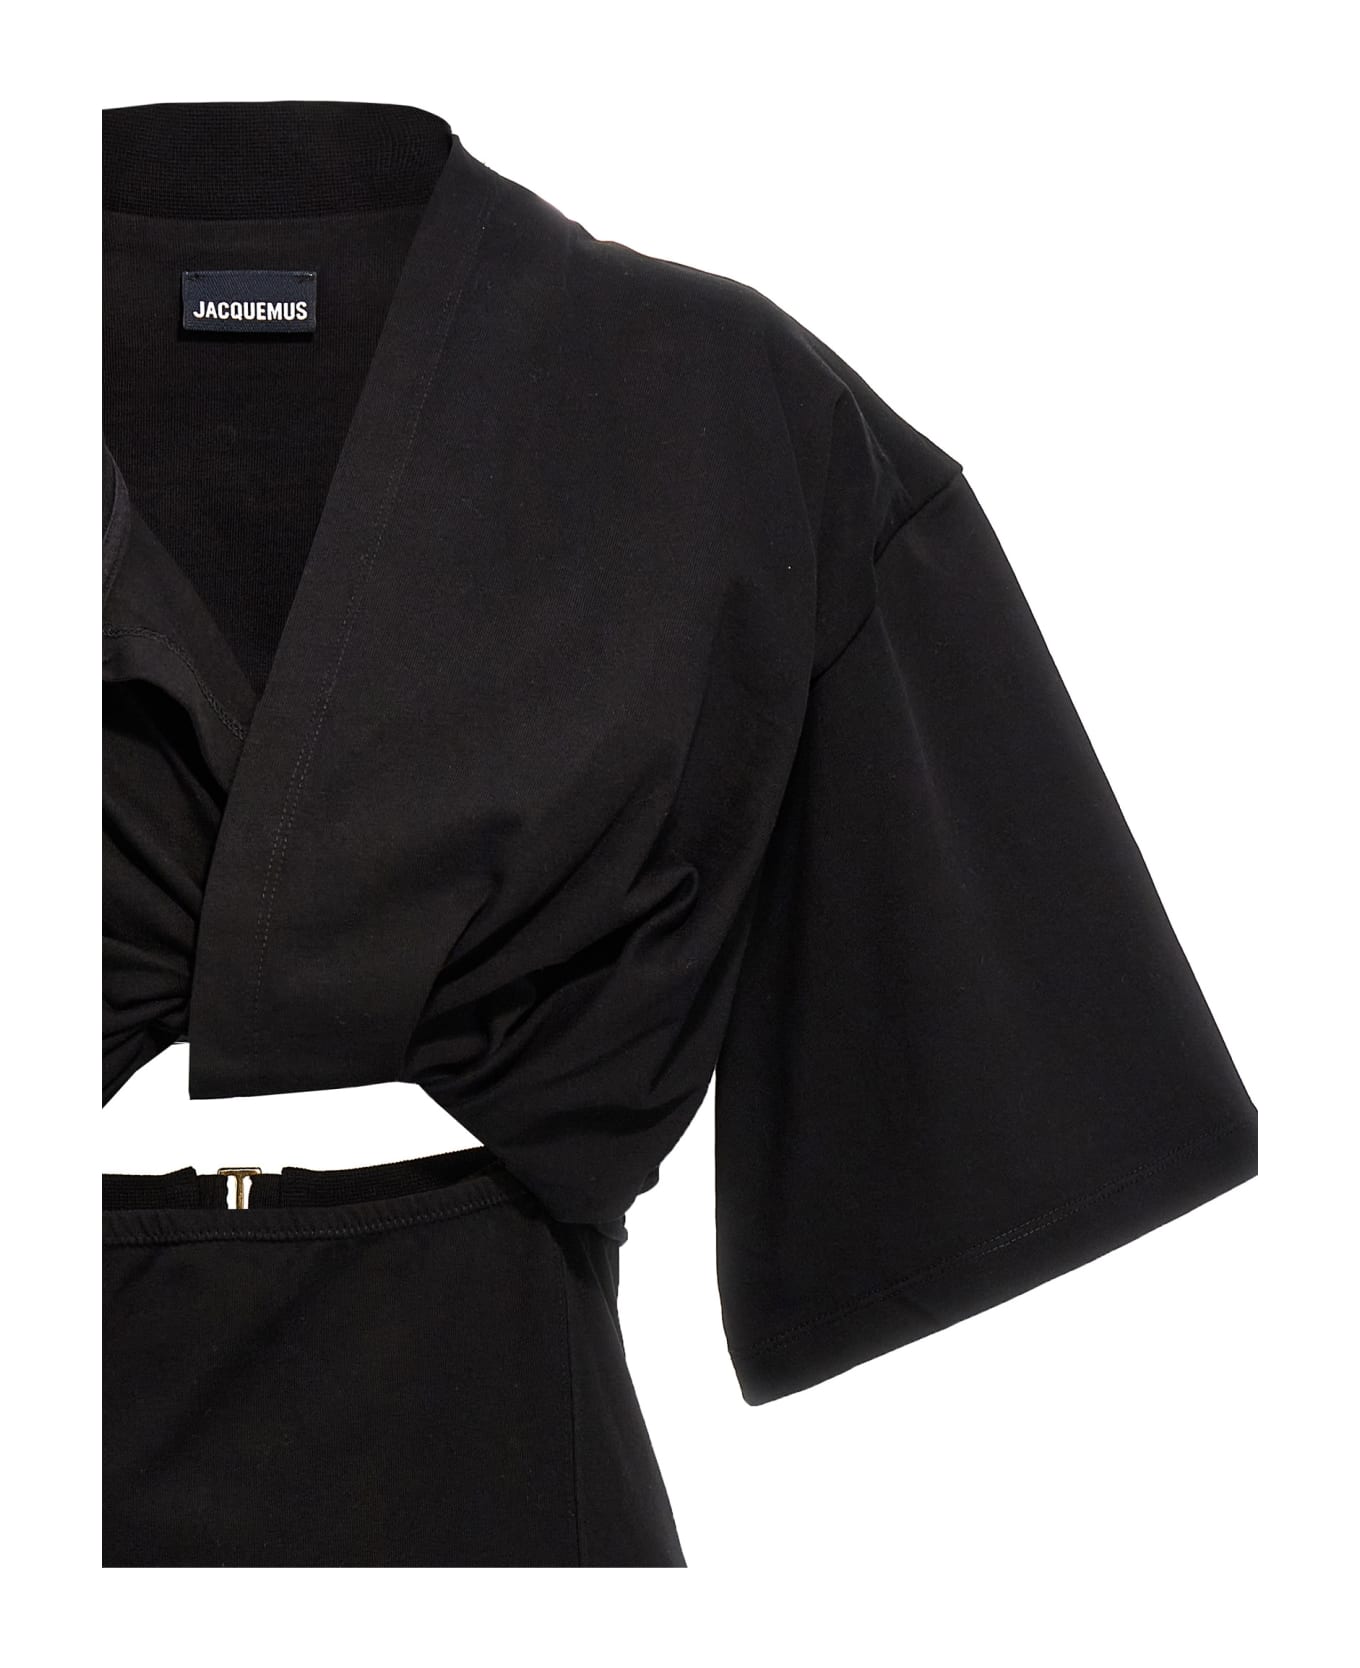 Jacquemus 'bahia' Dress - Black  